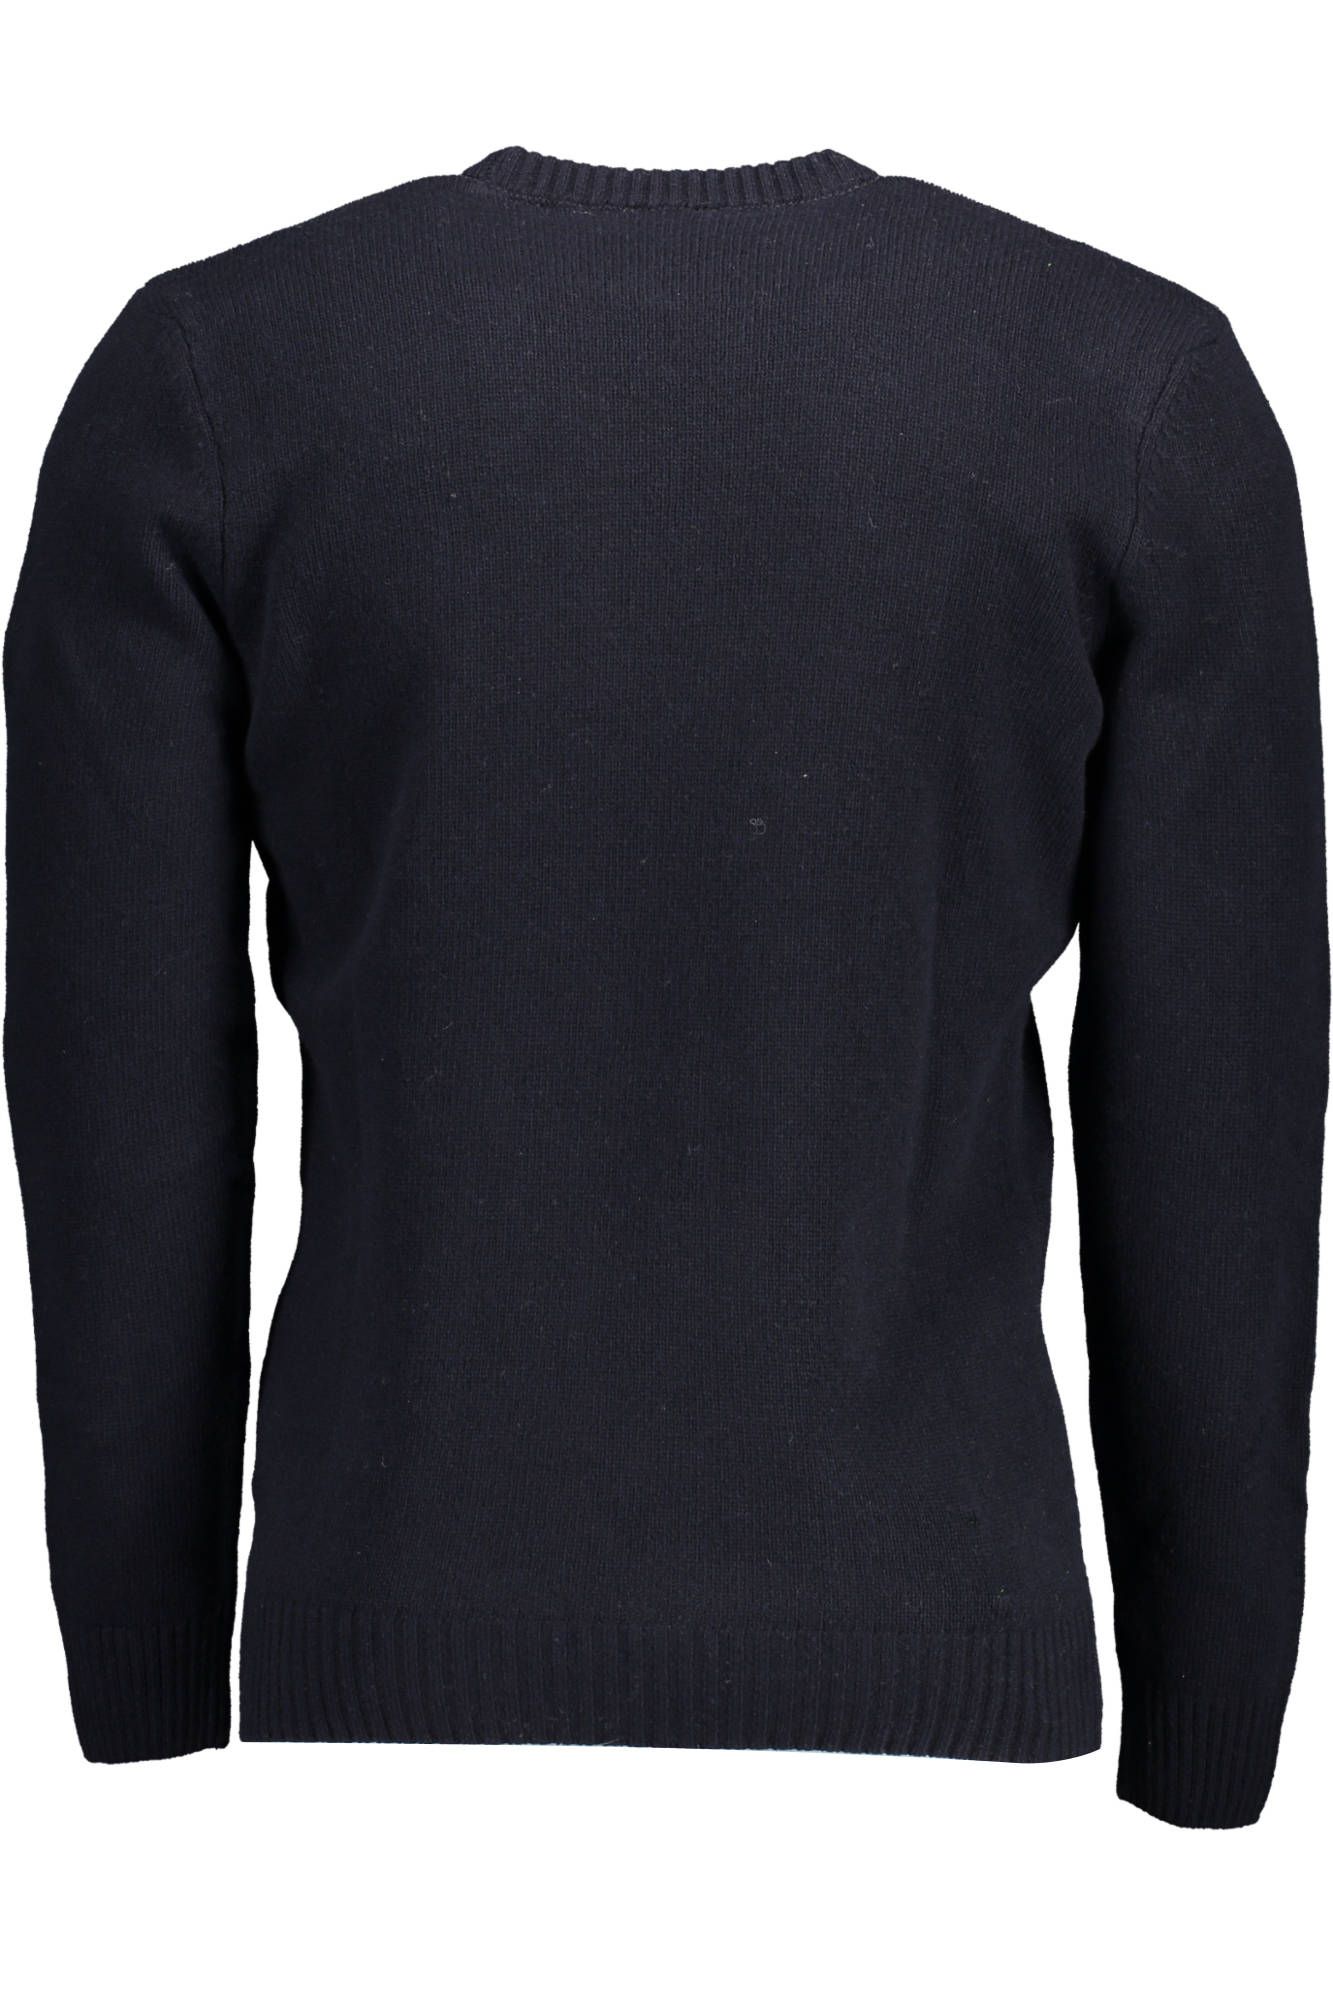 U.S. Polo Assn. Blue Wool Sweater